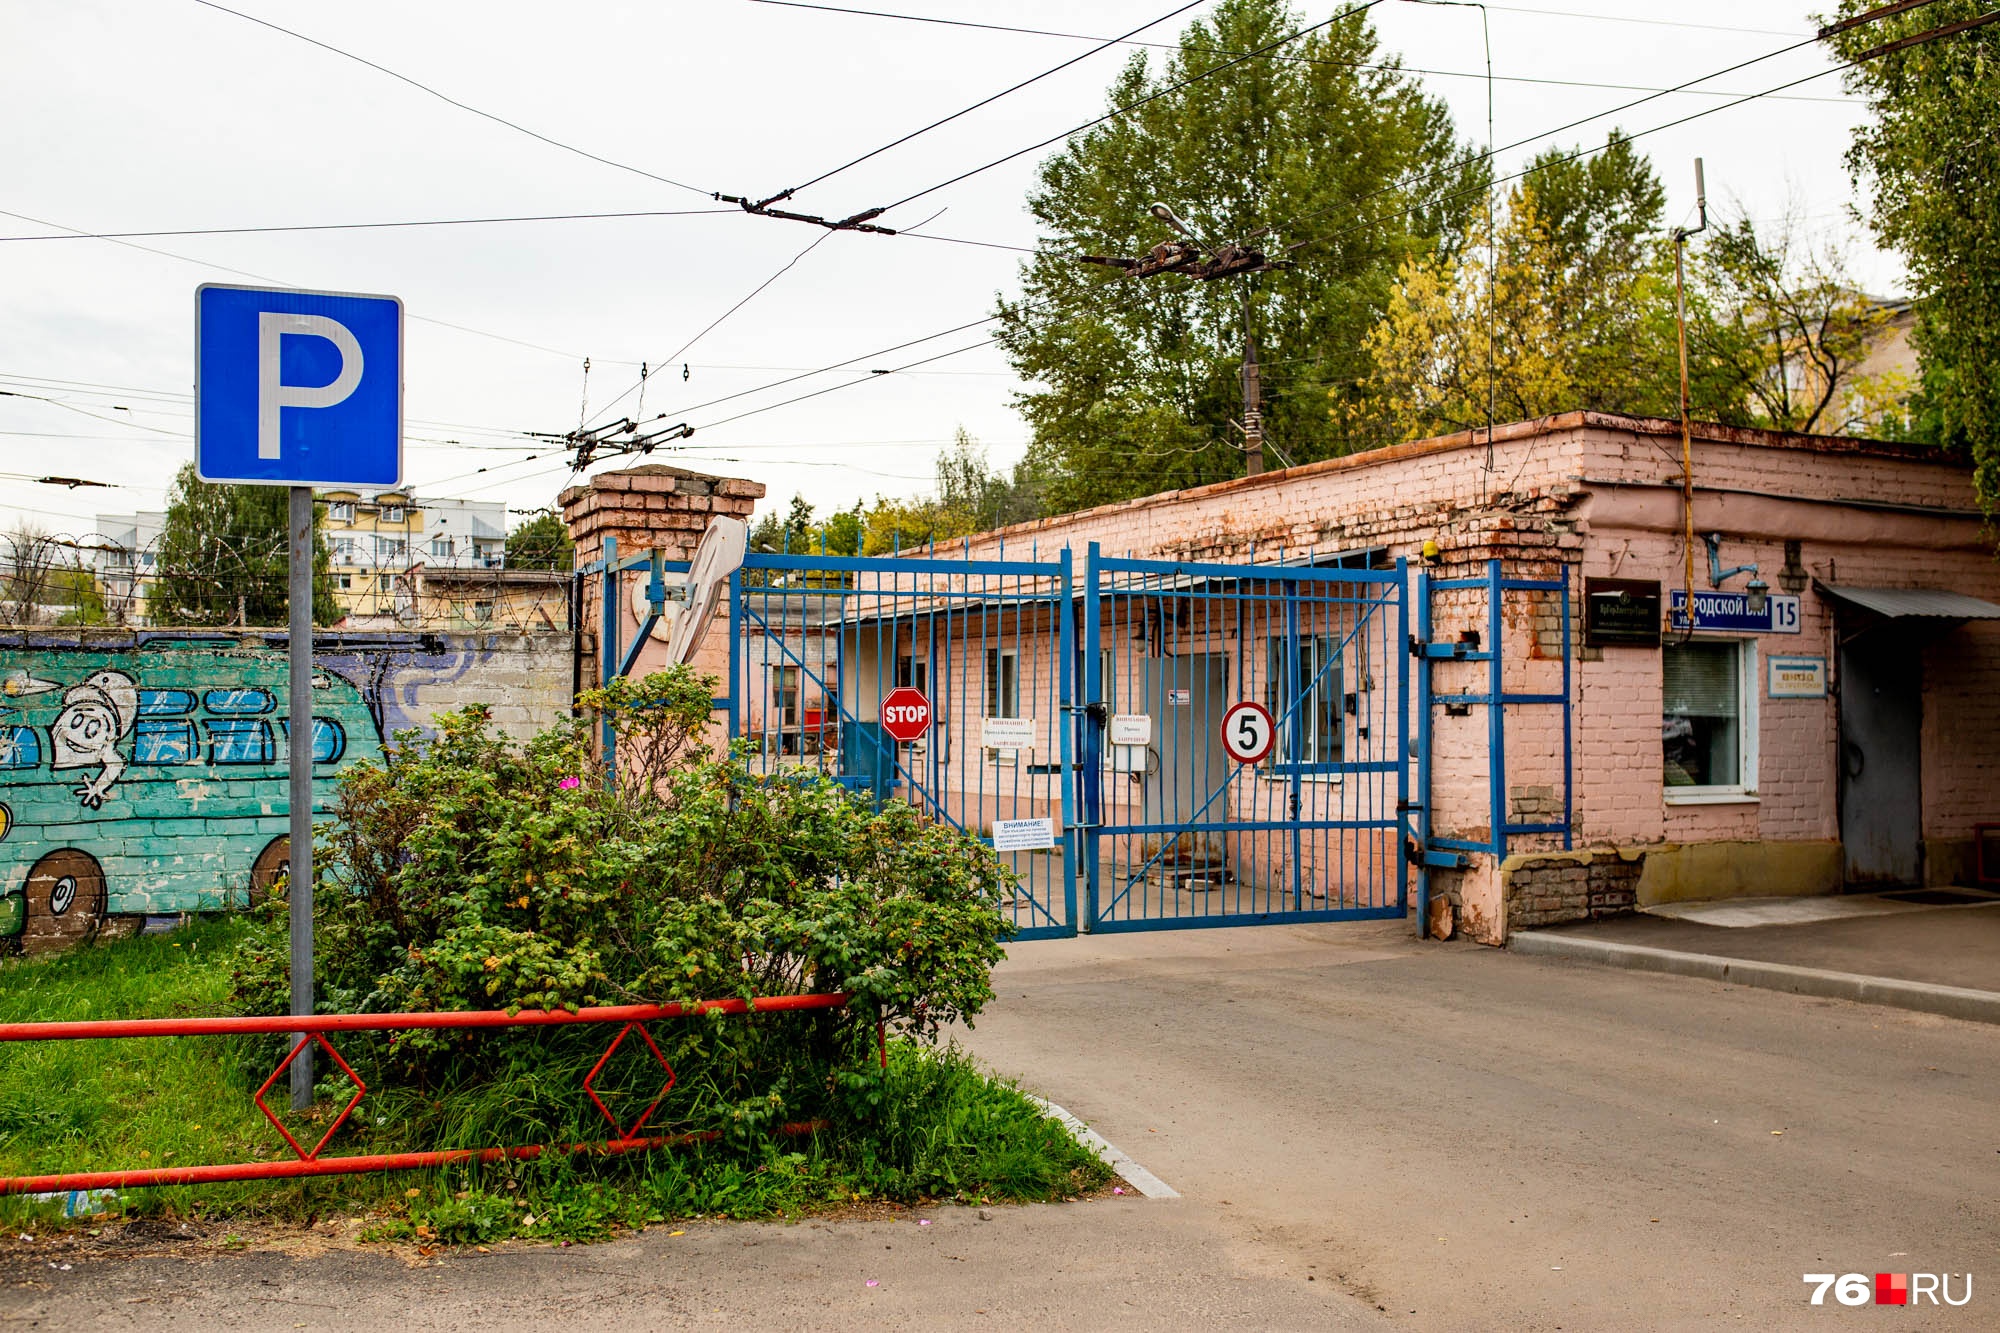 Троллейбусное депо № 1 занимает солидную площадку на улице Городской вал